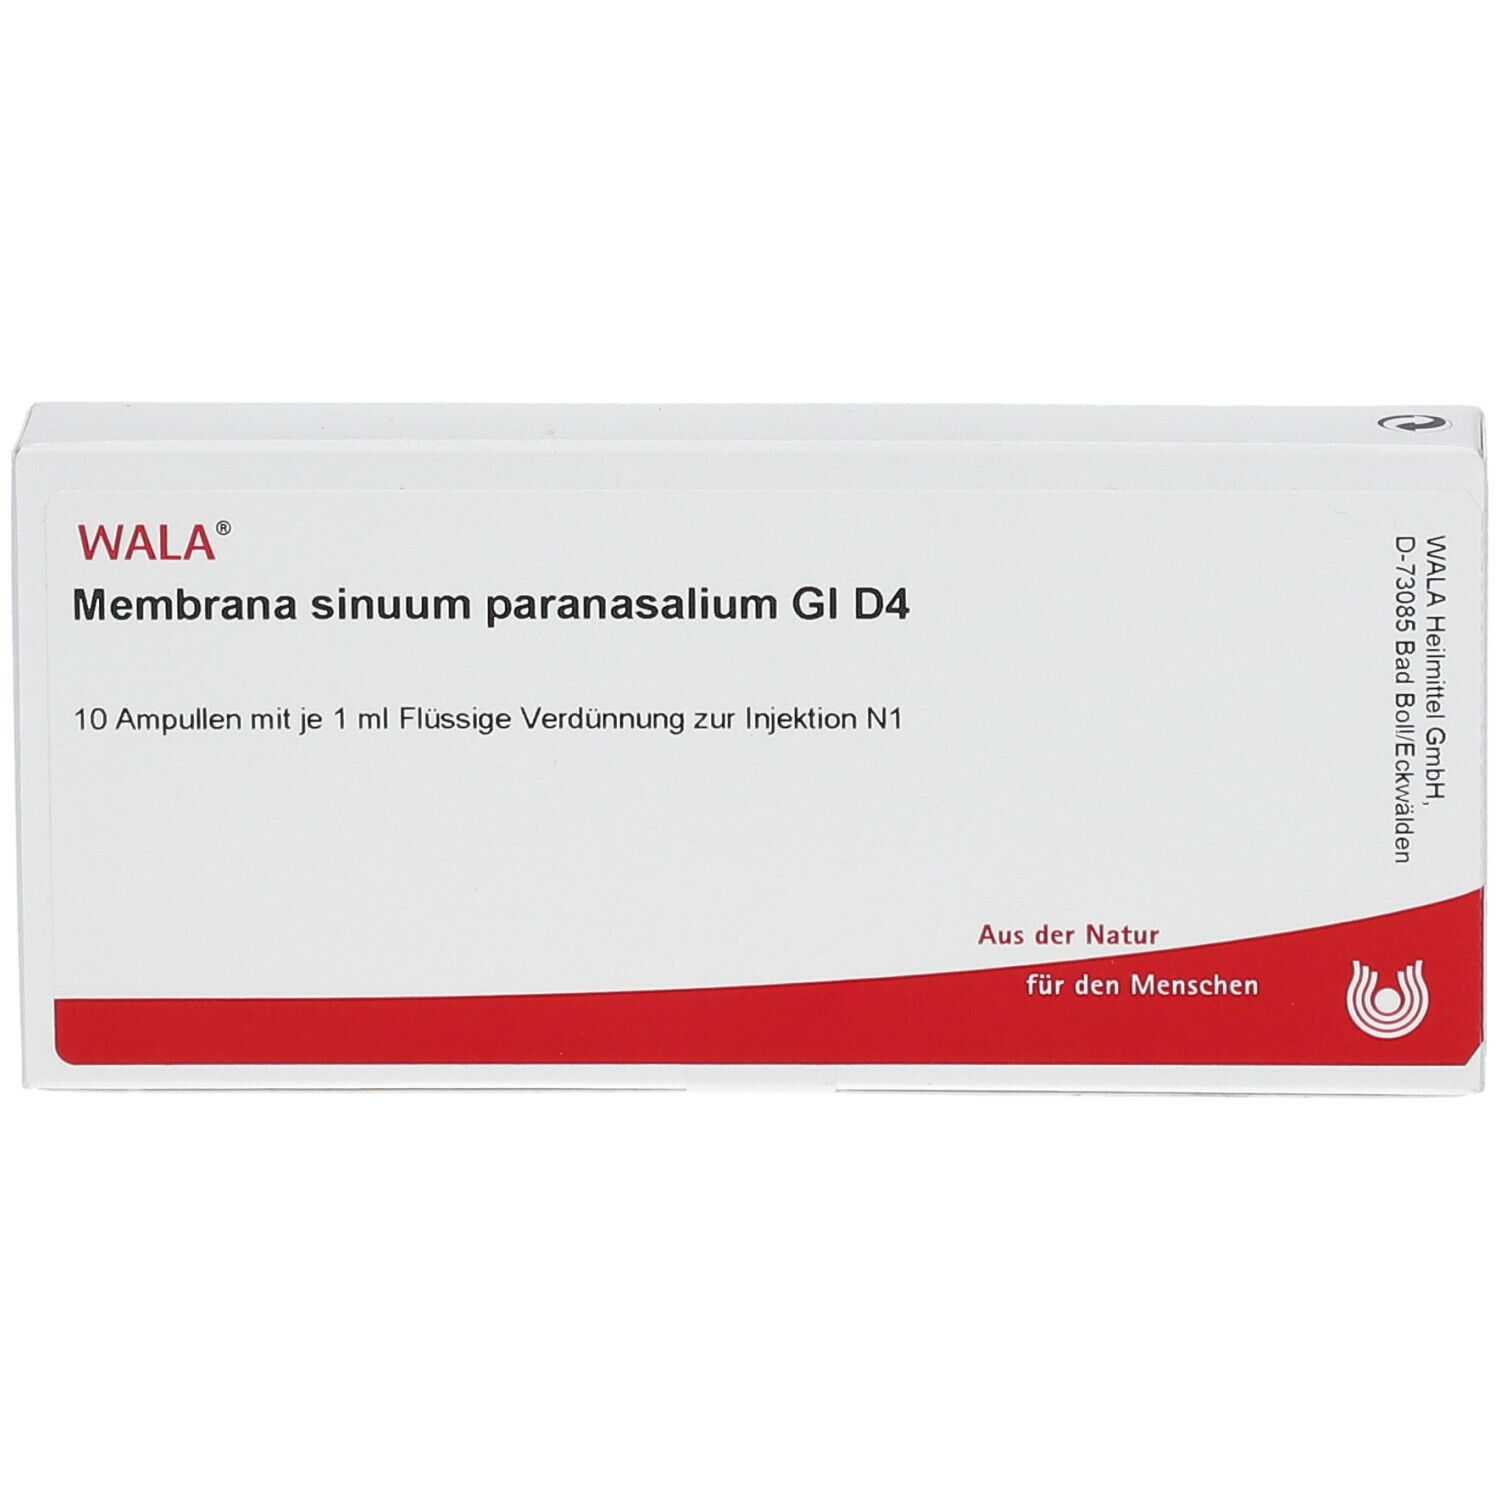 WALA® Membrana sinuum paranasalium Gl D 4